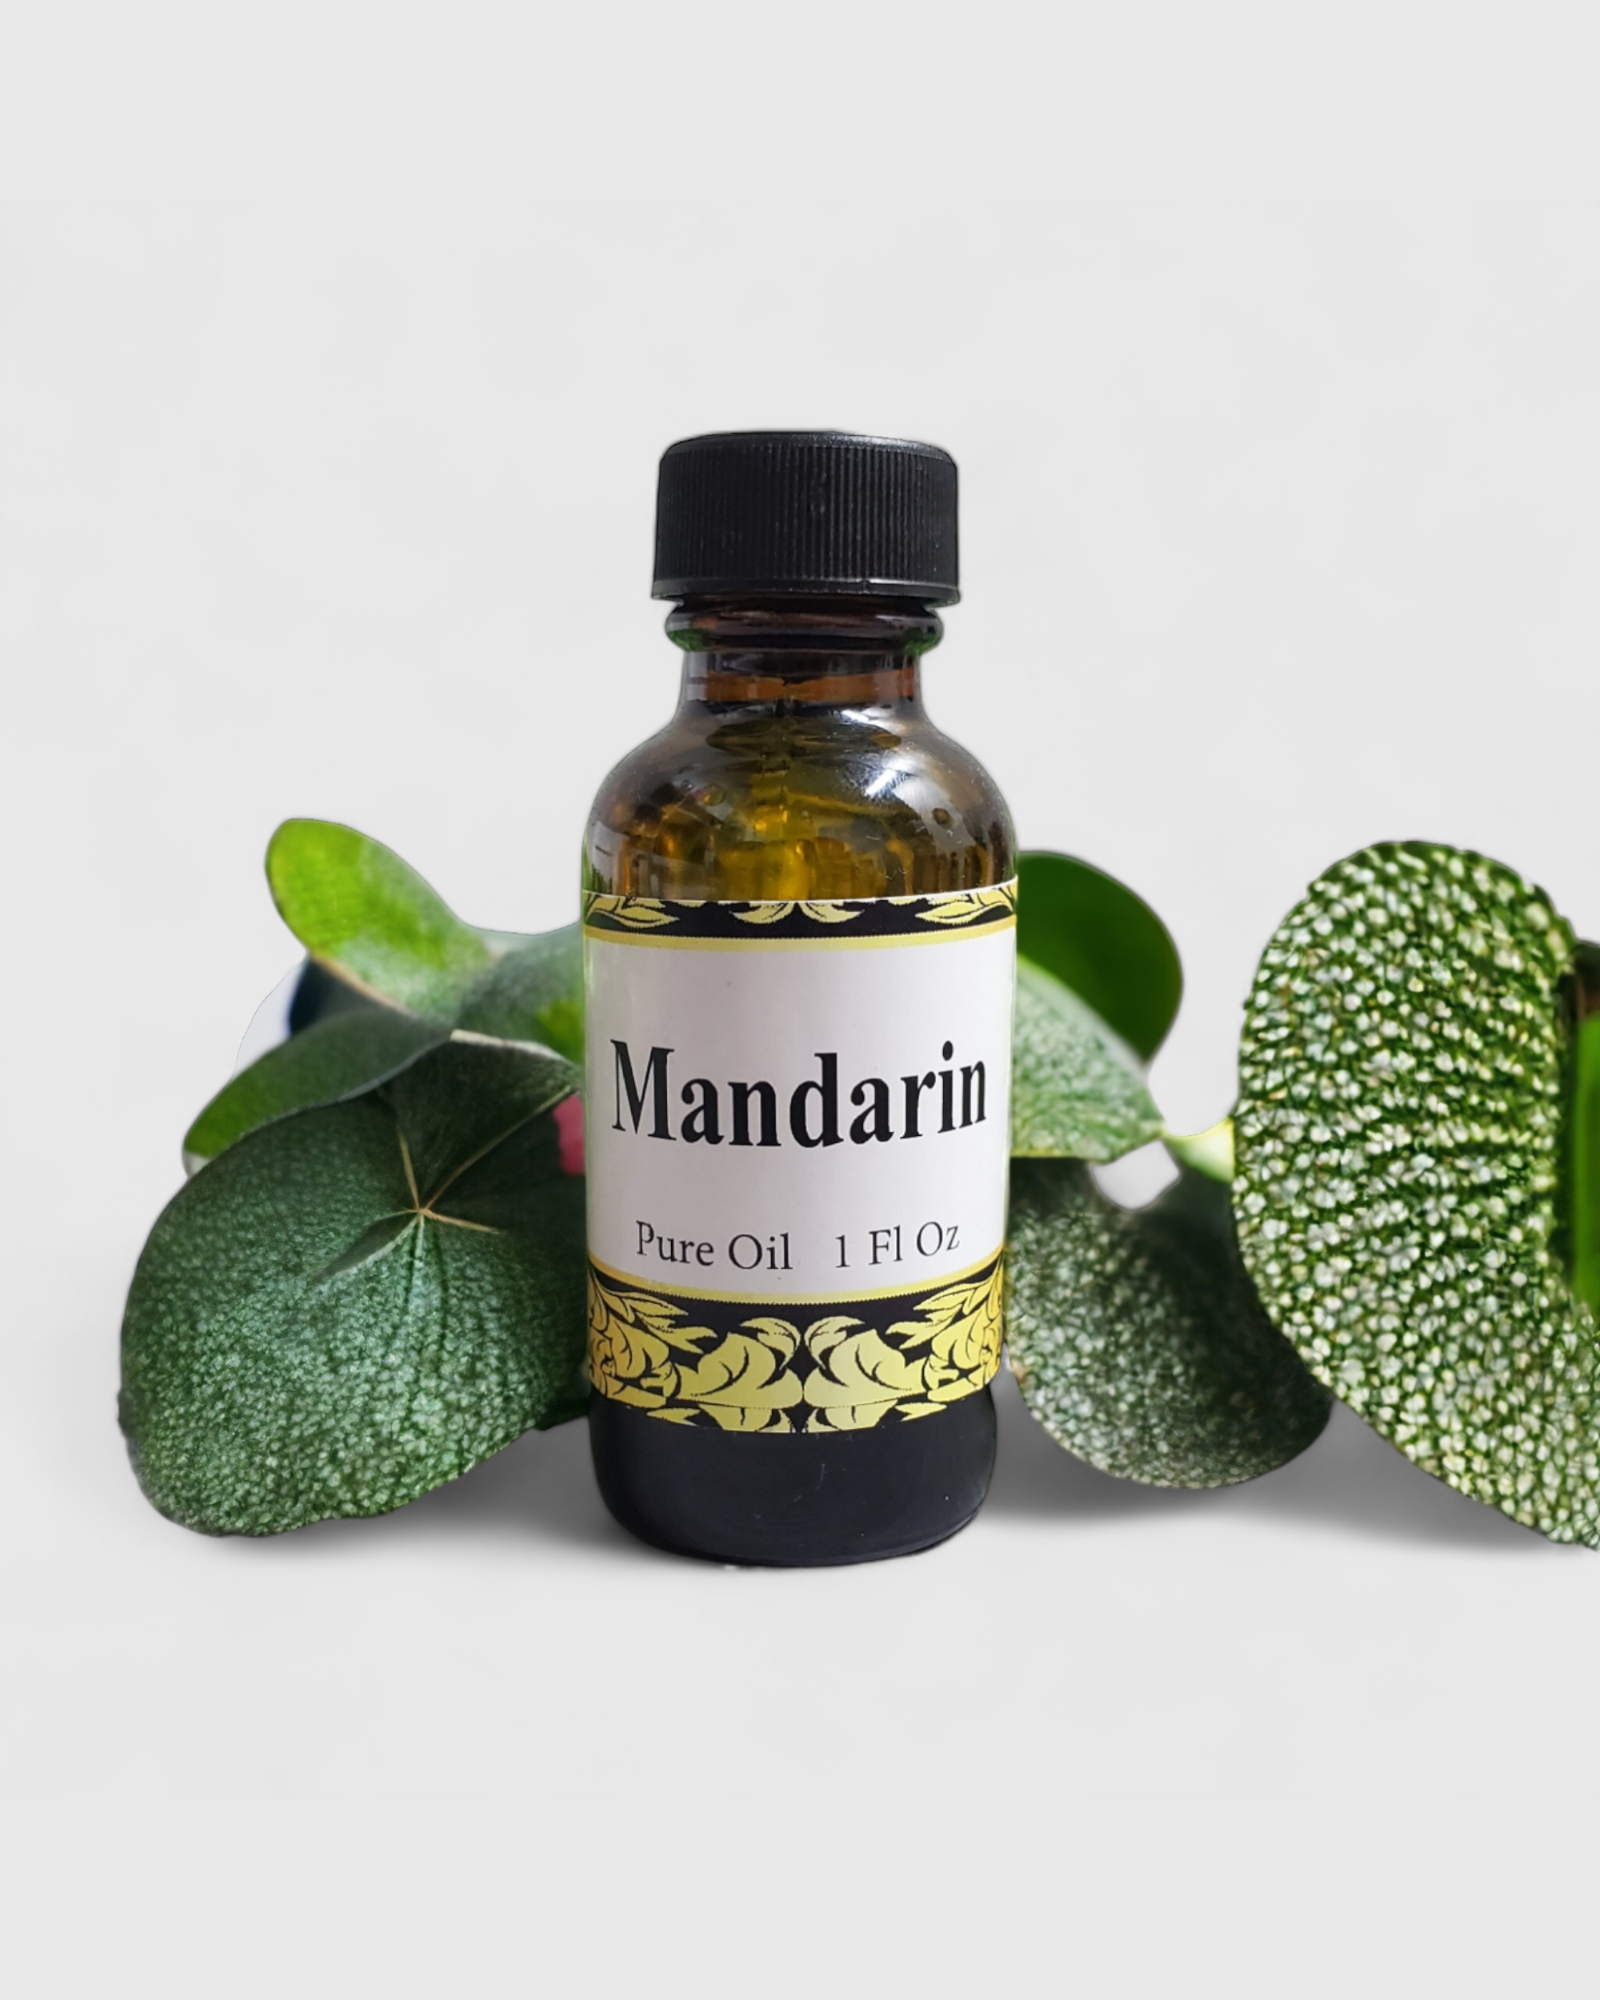 Mandarin Pure Oil